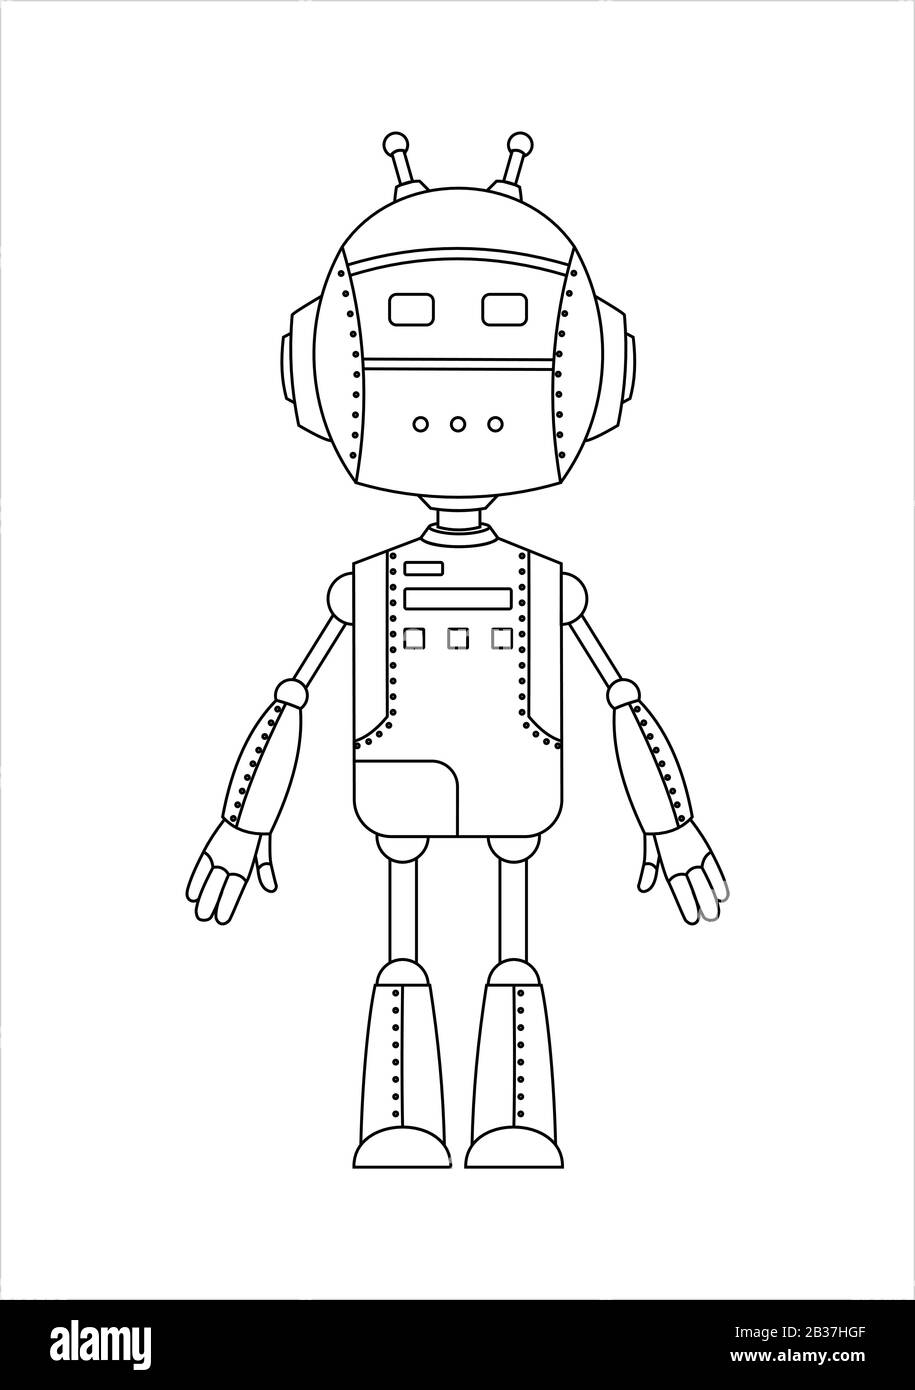 Décrire Le Caractère Convivial Du Robot Android Avec Deux Antennes. Illustration de Vecteur